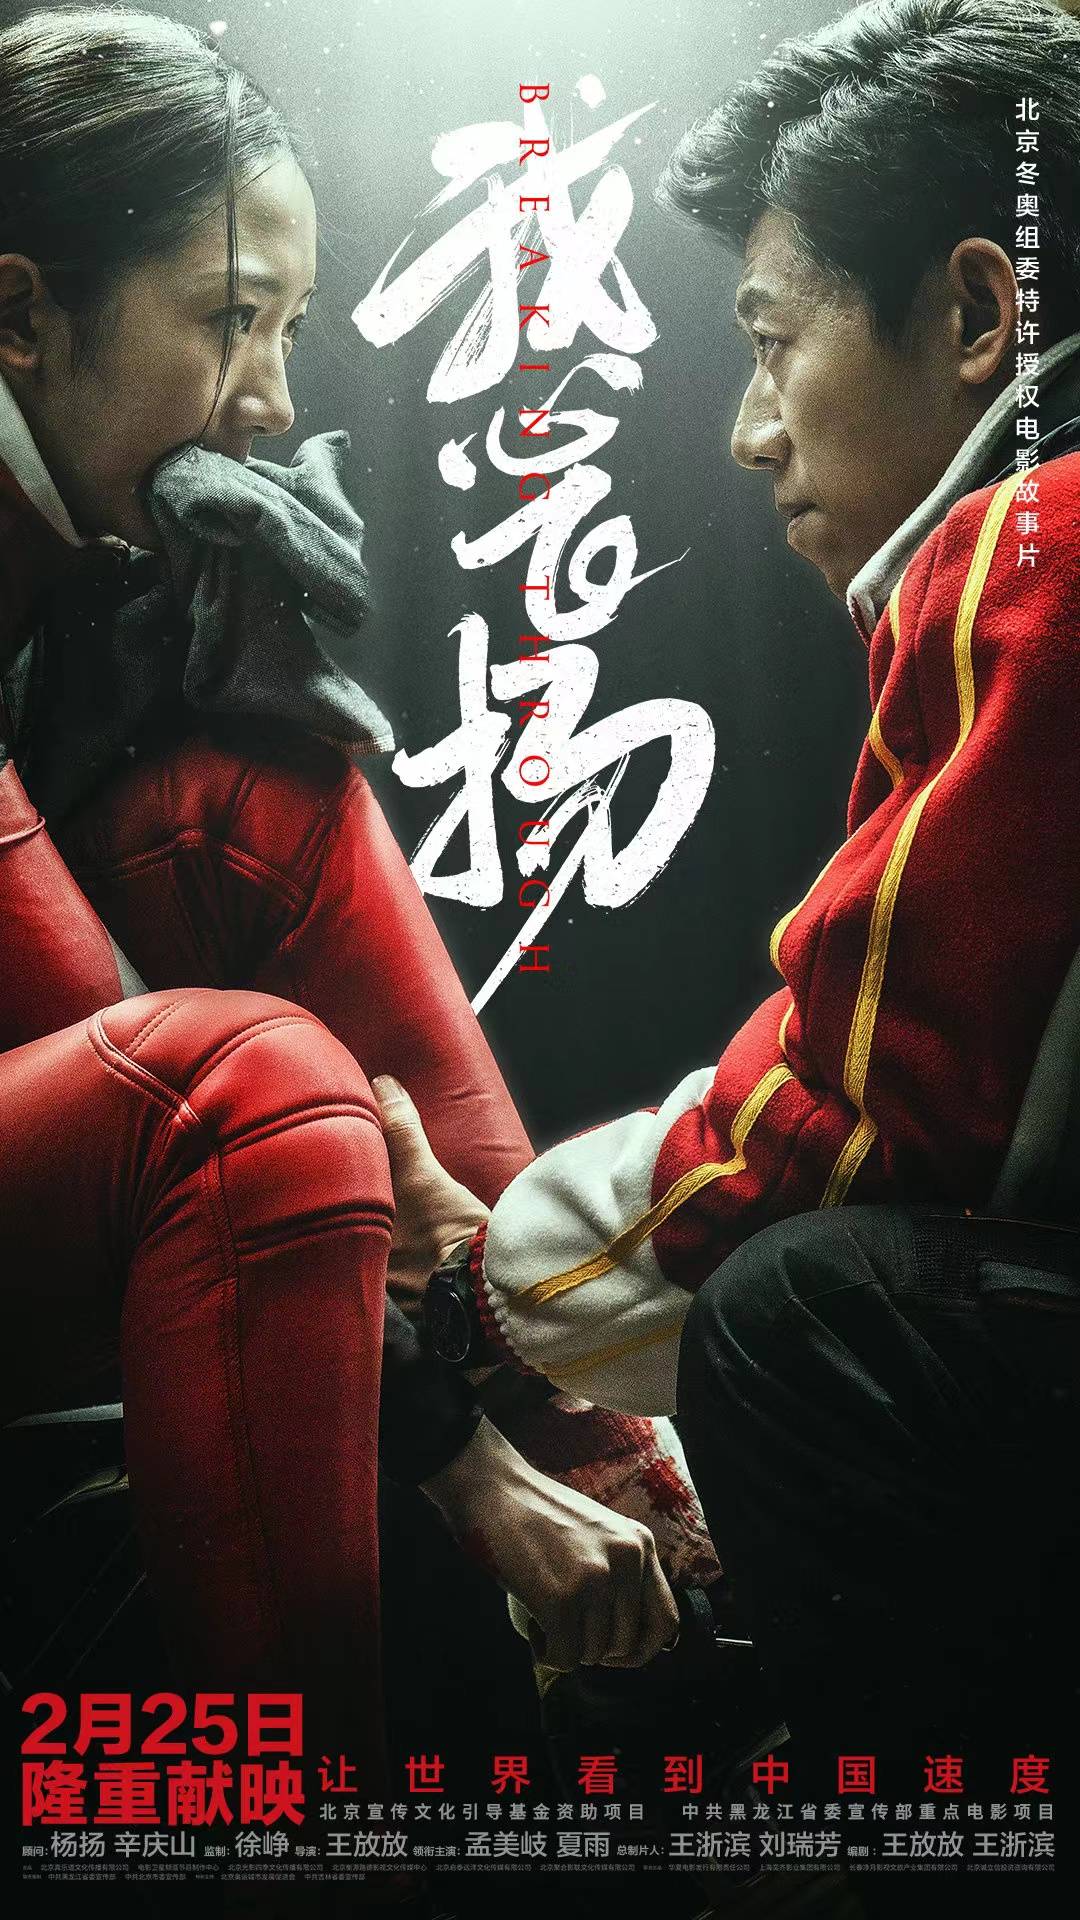 孟美岐、夏雨主演的电影《我心飞扬》将于2月25日上映